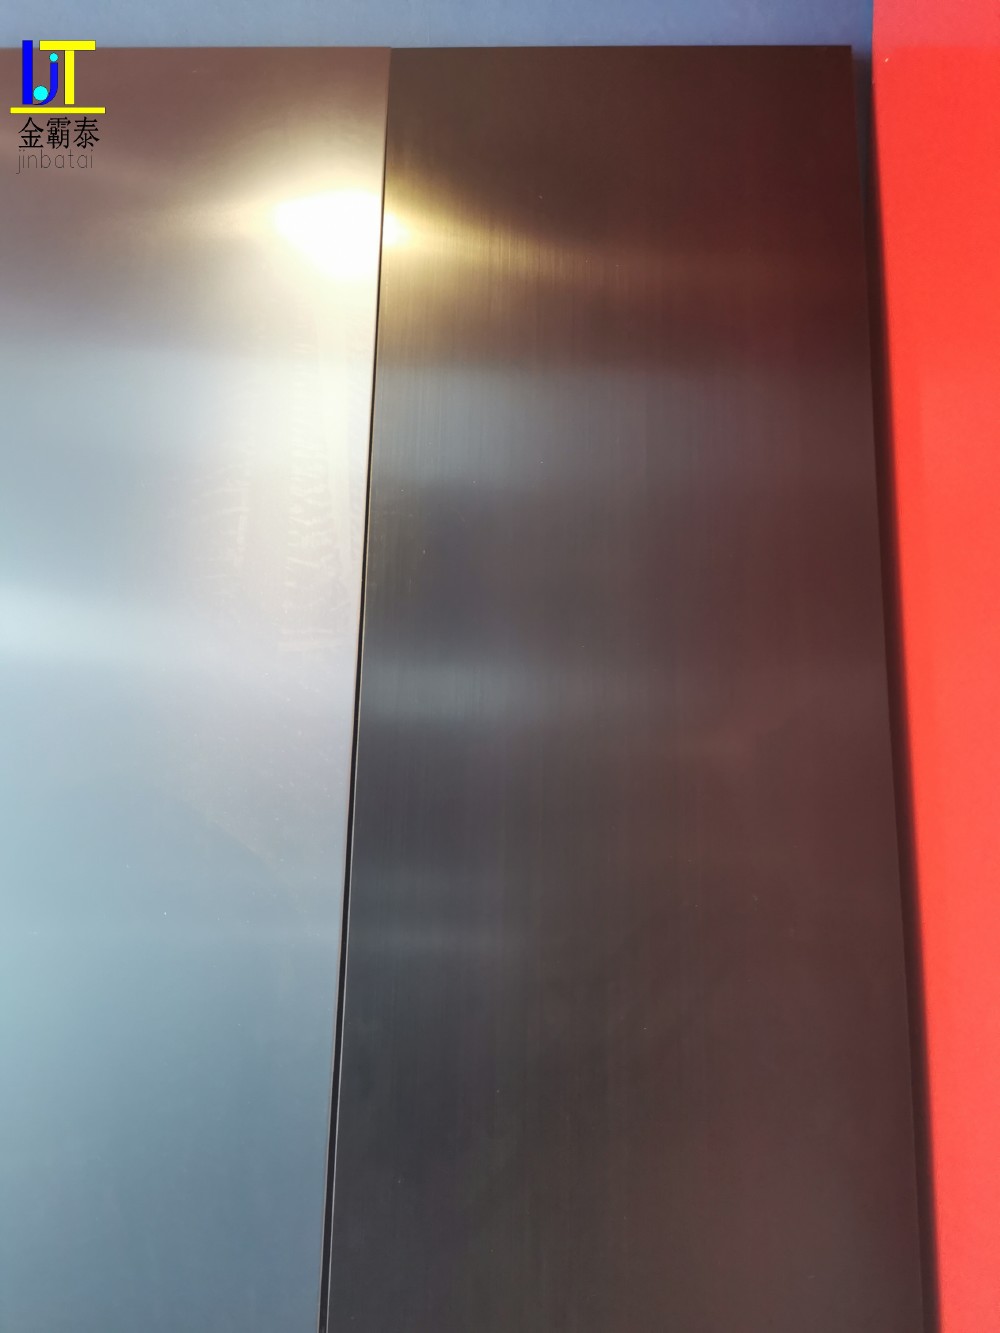 乌鲁木齐黑钛阳氧化铝板 广东定制阳氧化铝板 质量优良